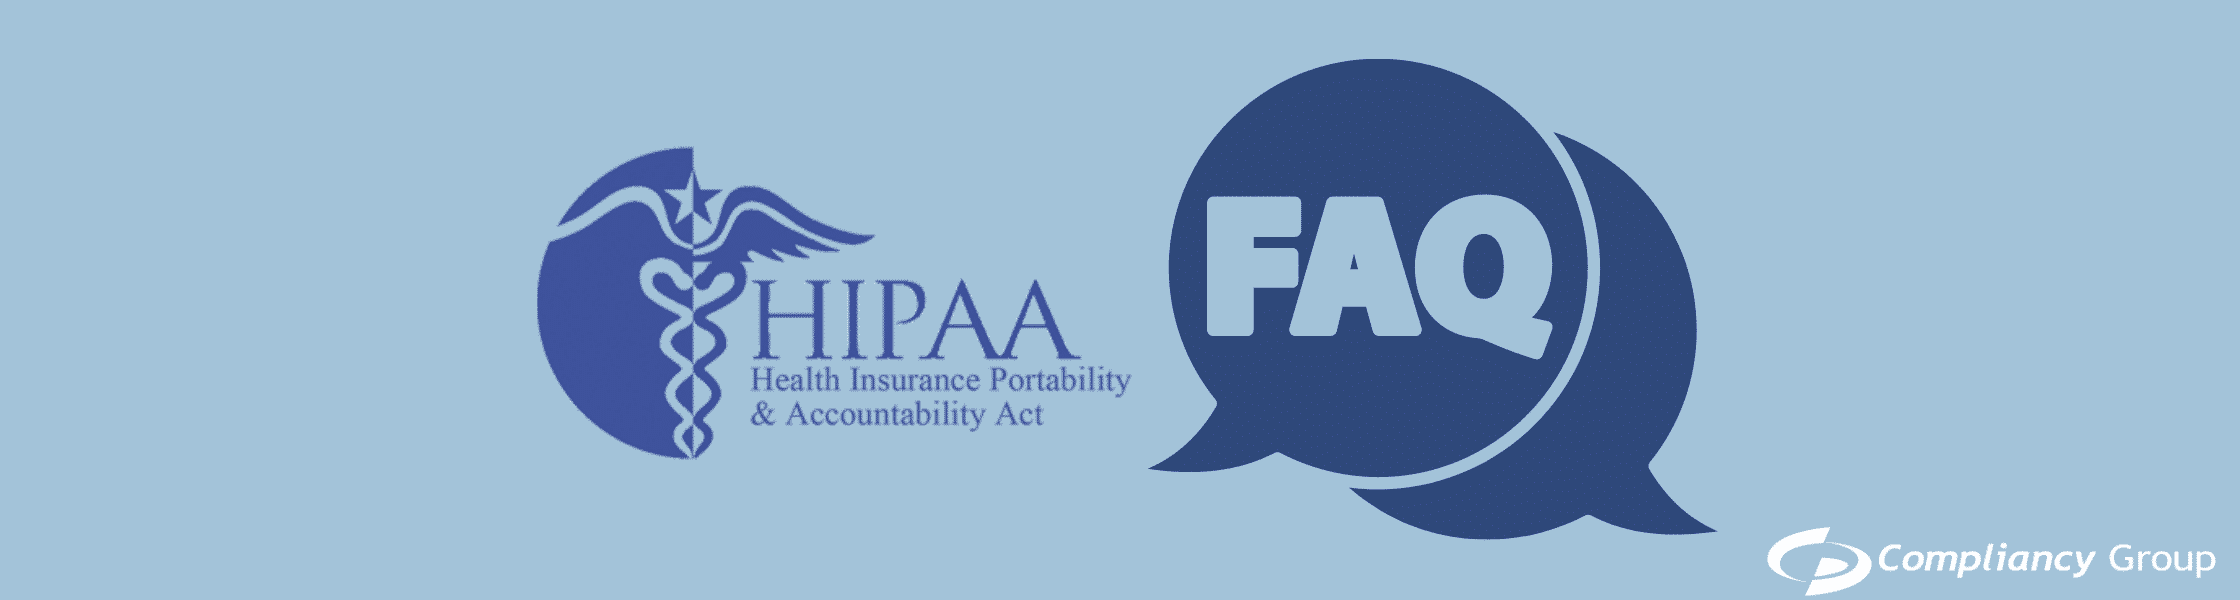 HIPAA FAQ